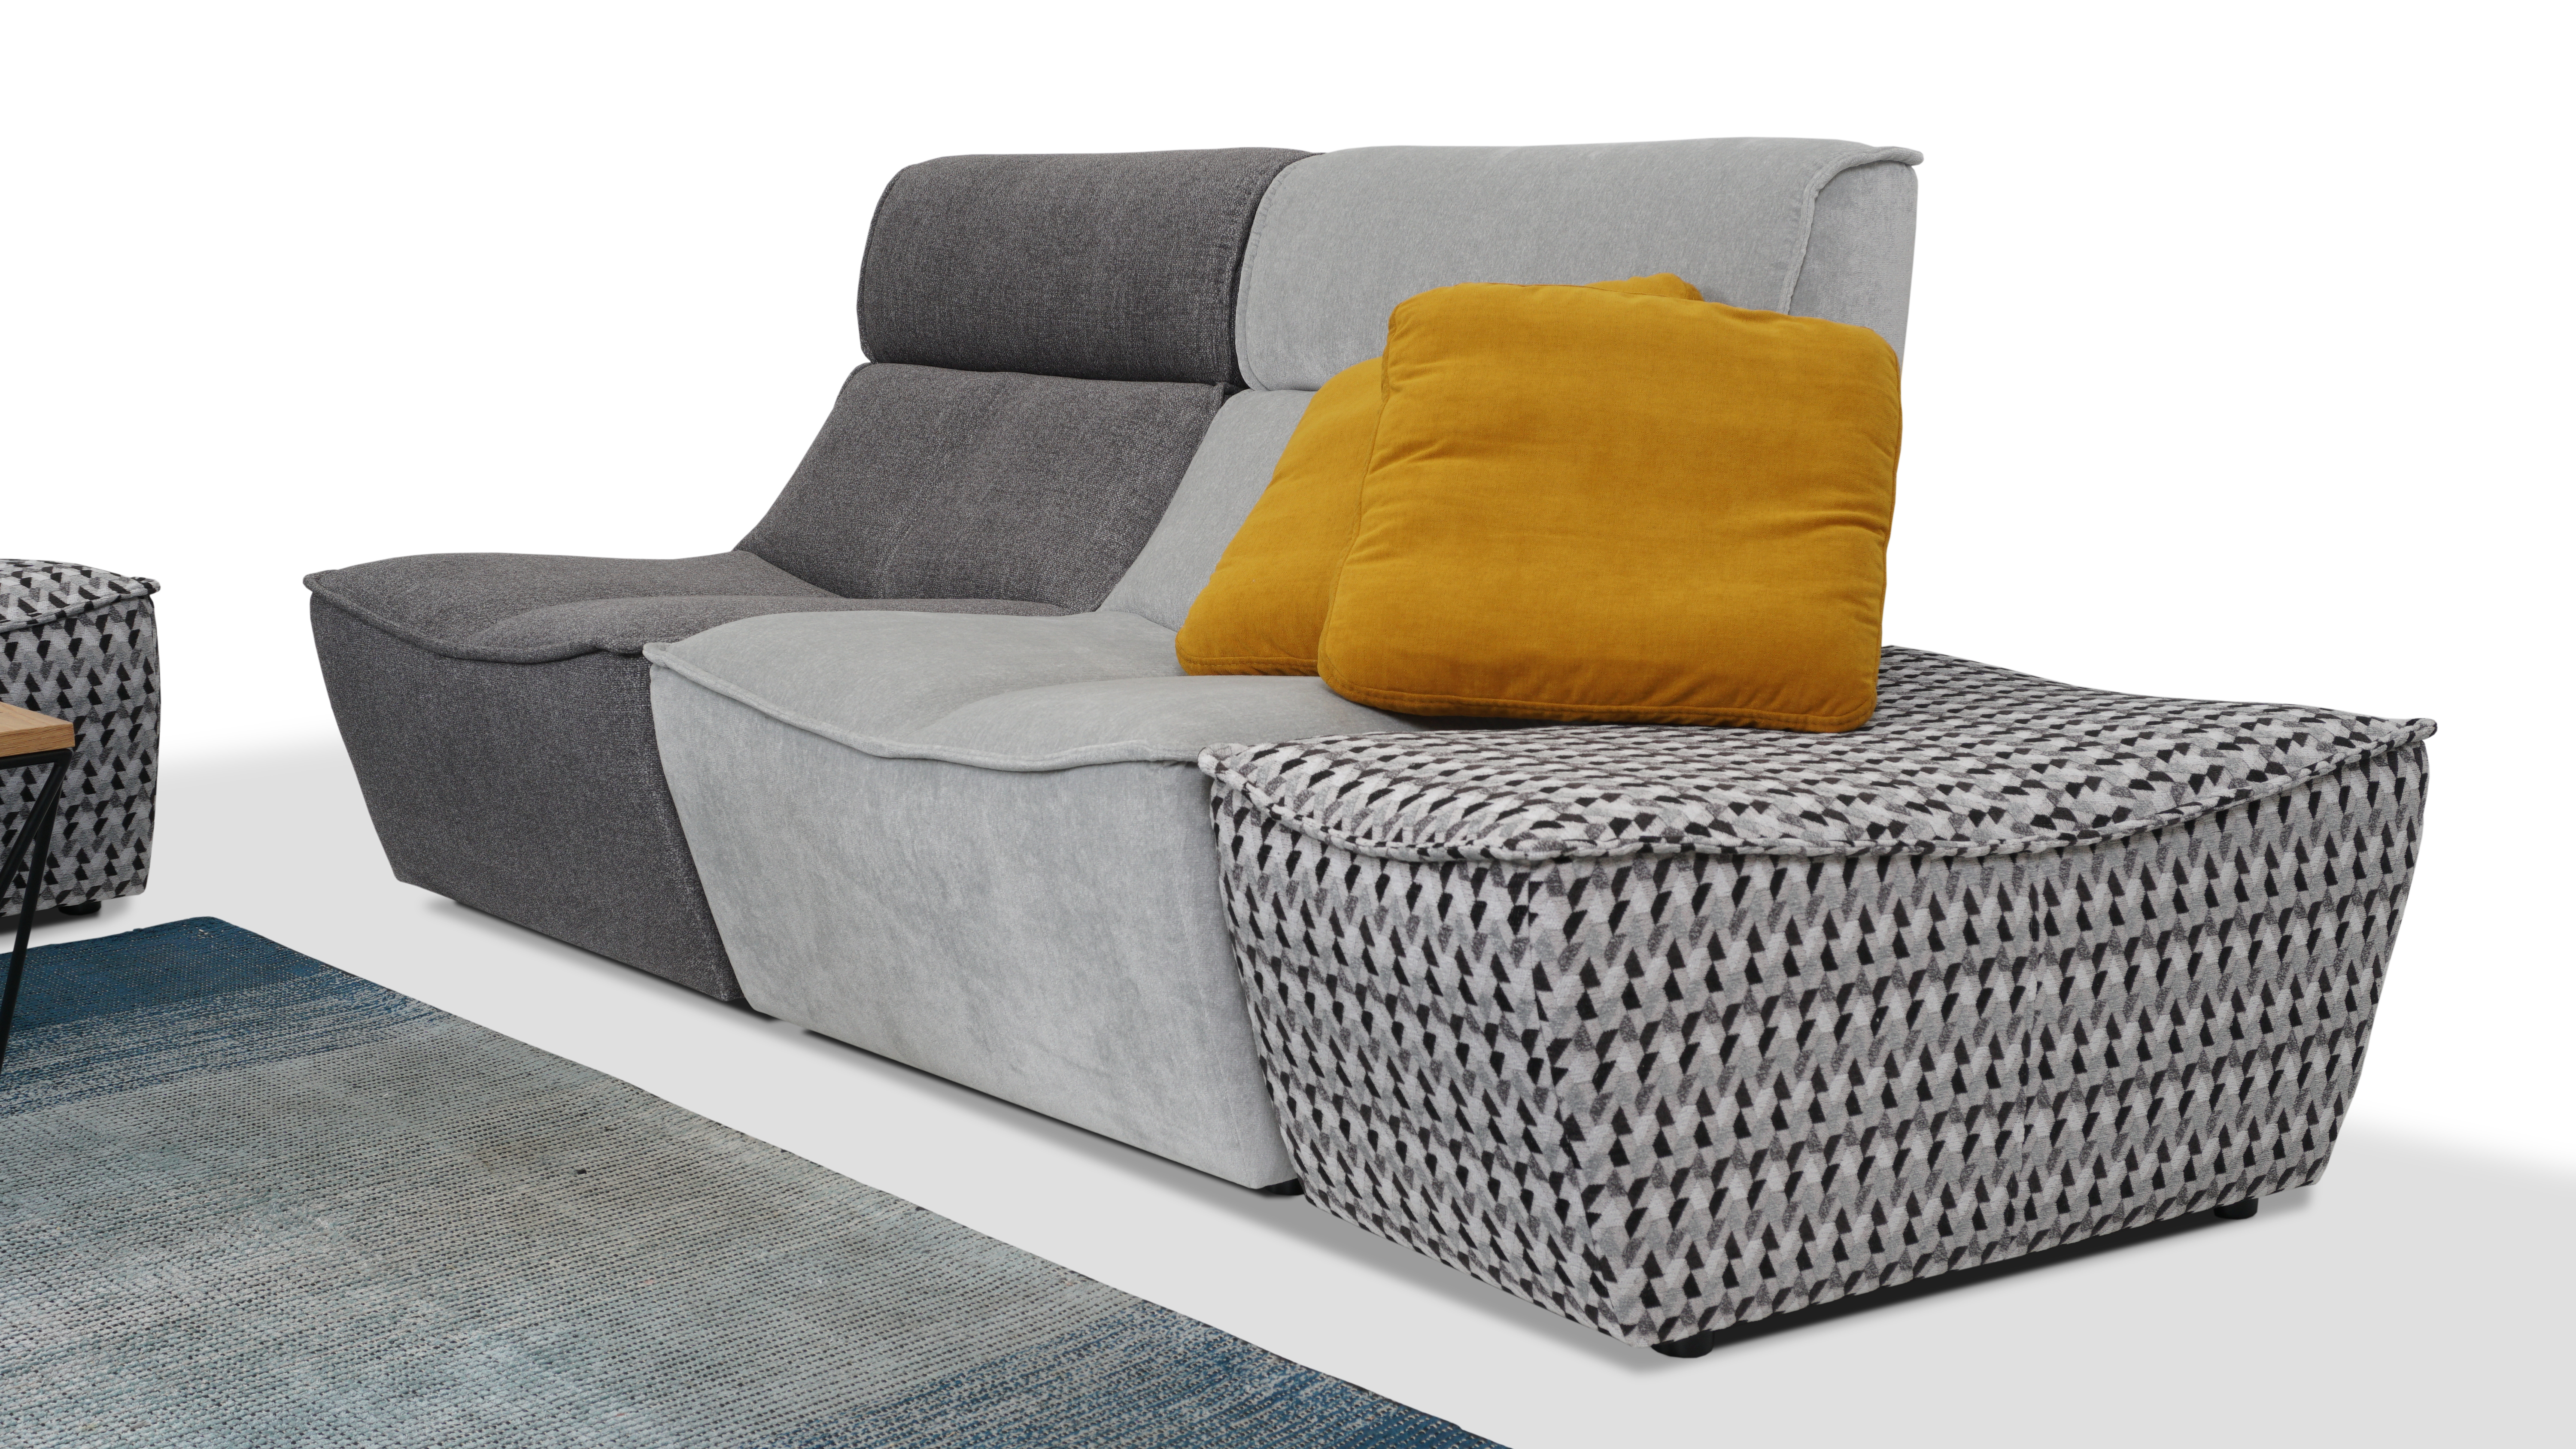 Nowoczesna modułowa sofa z materiału plamoodpornego z rozpinanymi siedziskami w odcieniach szarości